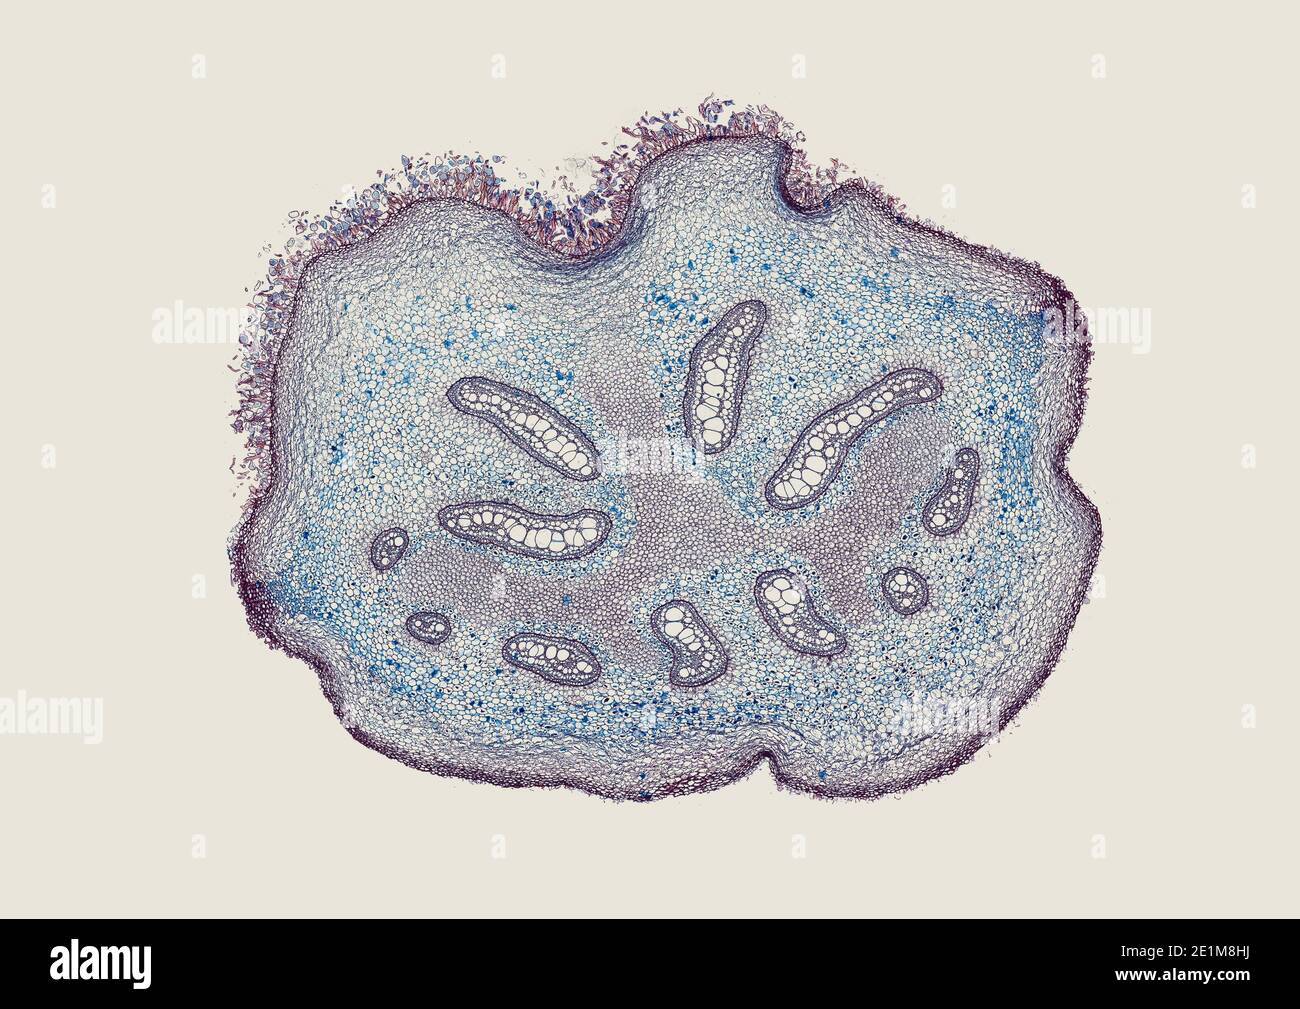 Querschnitt unter dem Mikroskop geschnitten – mikroskopische Ansicht von  Pflanzenzellen für die botanische Erziehung Stockfotografie - Alamy